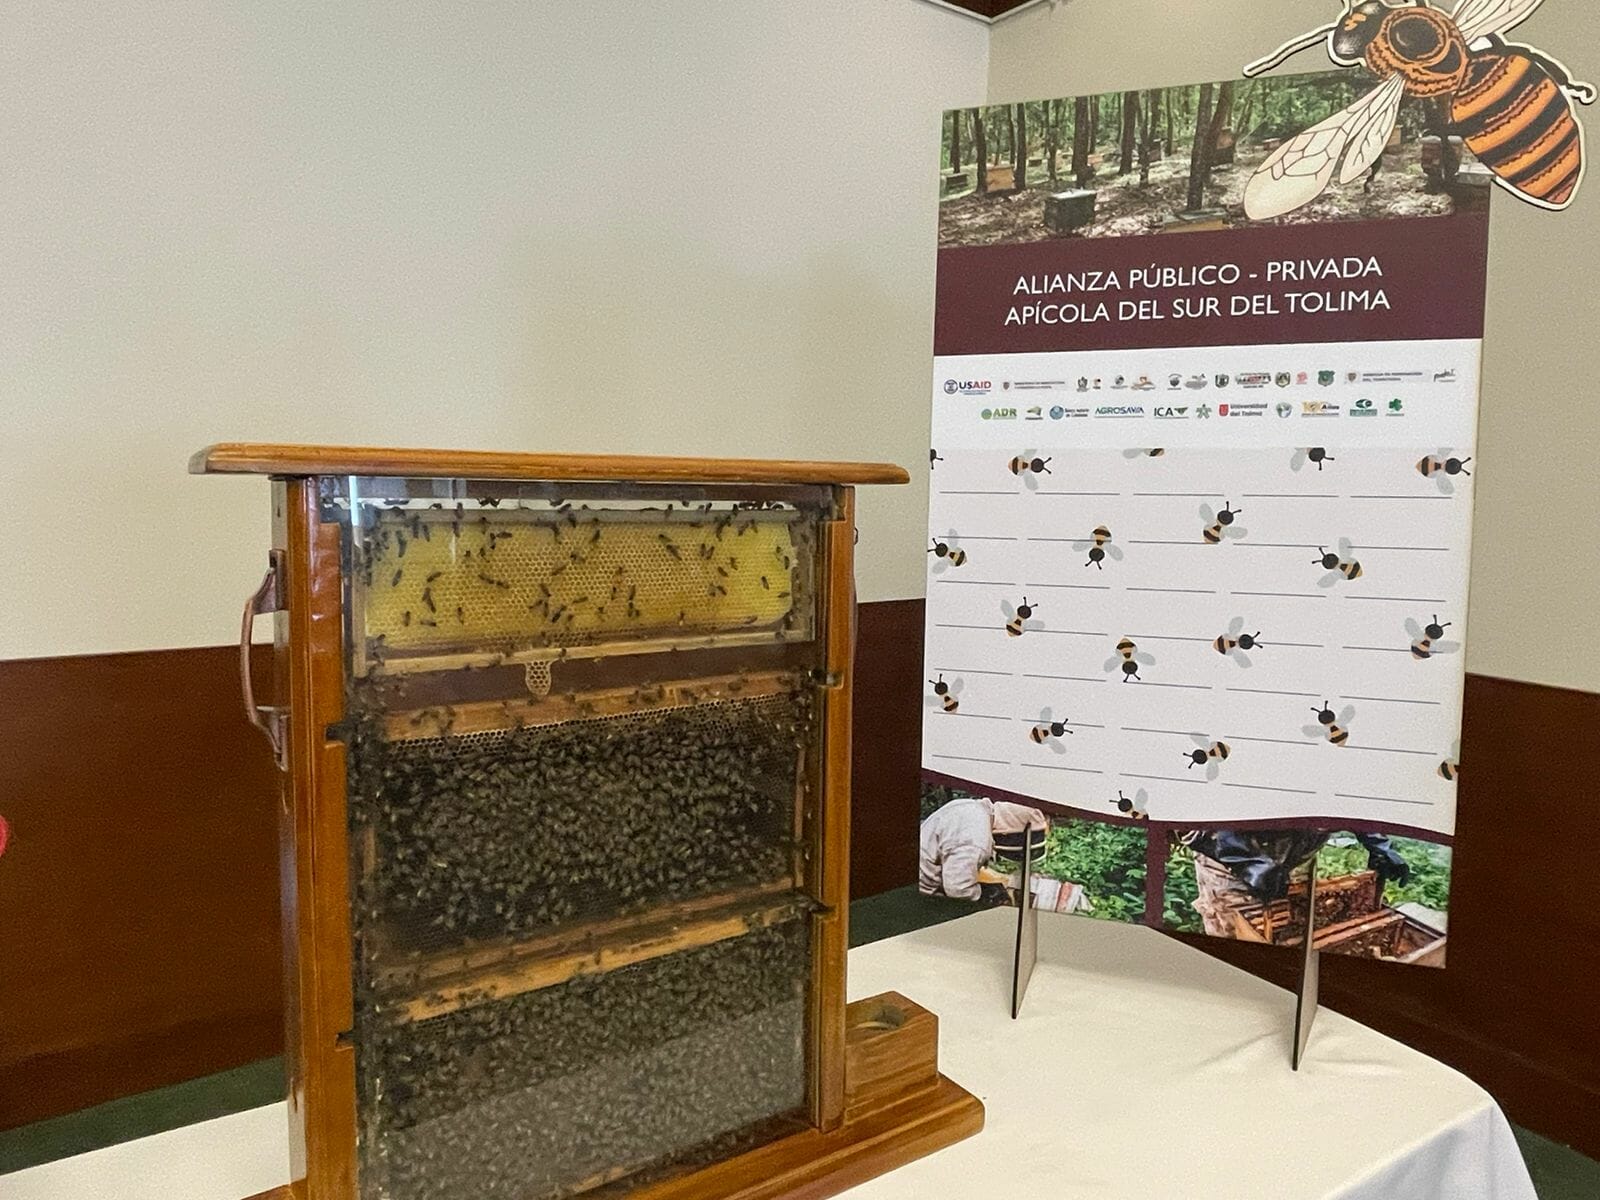 ”Las abejas están de moda”: Crean APP Apícola para el sur del Tolima. 1